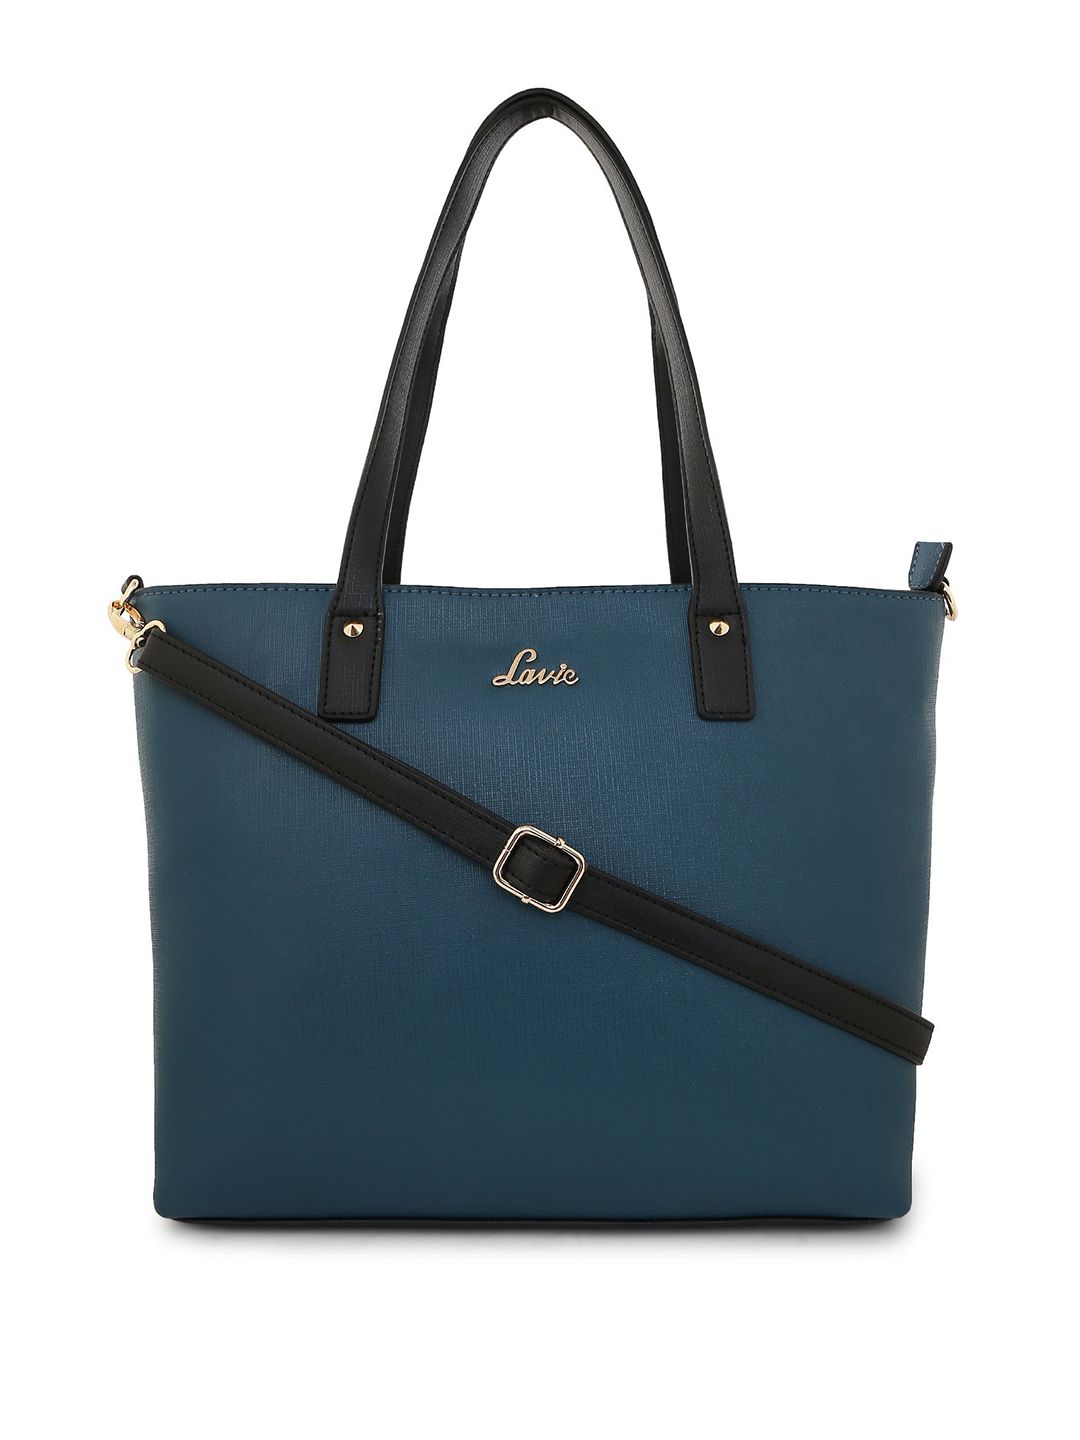 Lavie Teal Blue Solid Shoulder Bag Price in India